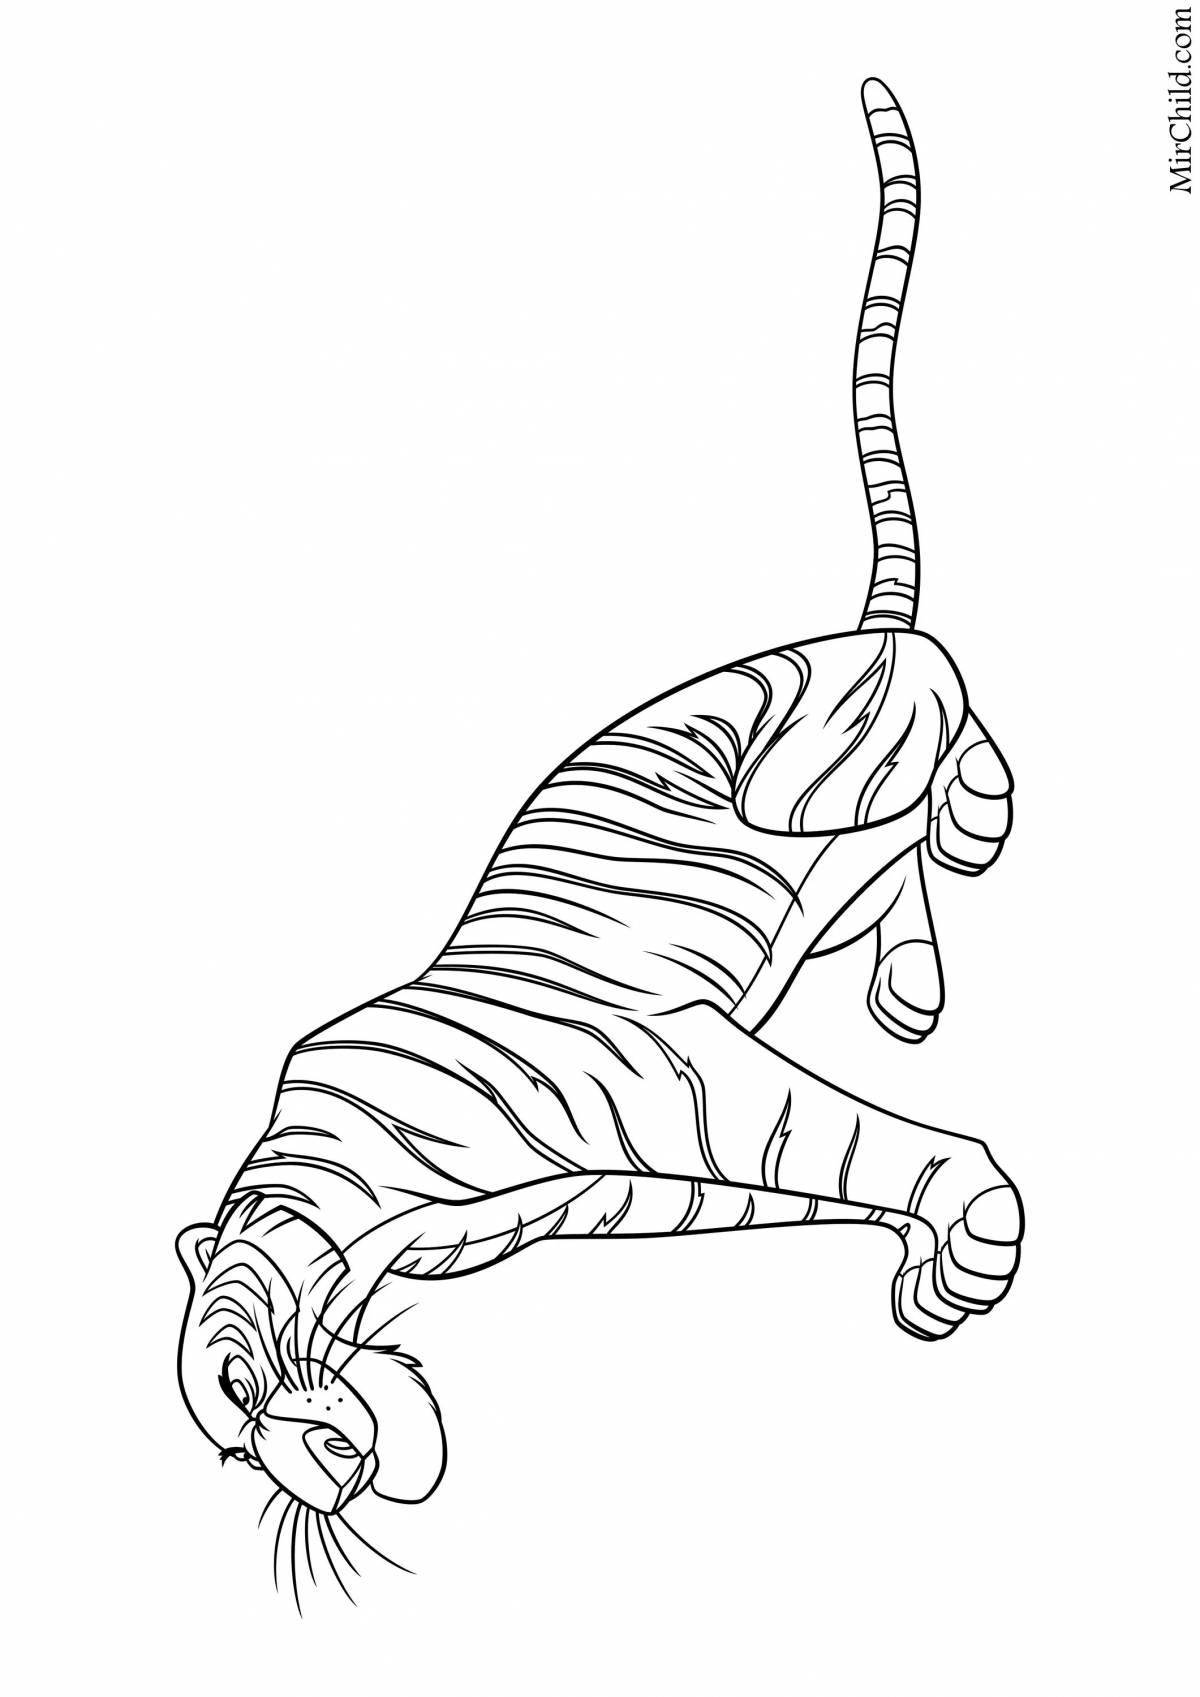 Generous coloring Shere Khan from Mowgli